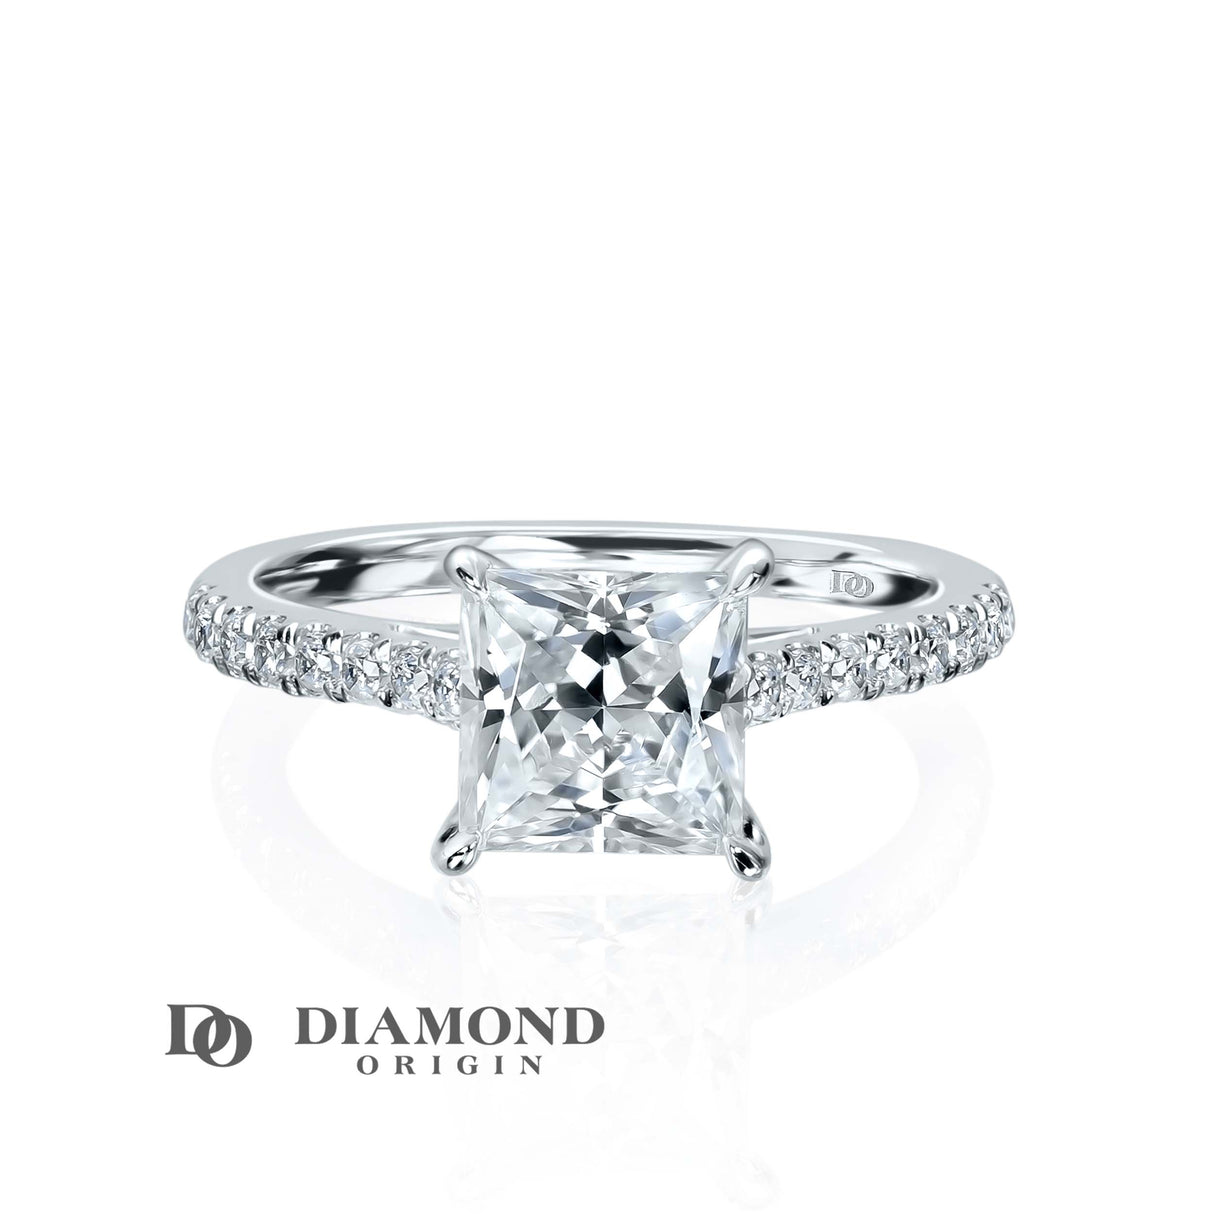 Diamond Ring, 2 ct. Diamond Solitaire Engagement Ring, Princess Shape 2 ct., Lab-Grown Diamond 2 ct. Weight Diamond Ring, - Diamond Origin, lab created diamonds, lab grown diamonds, lab created diamond, diamond ring, diamond rings,